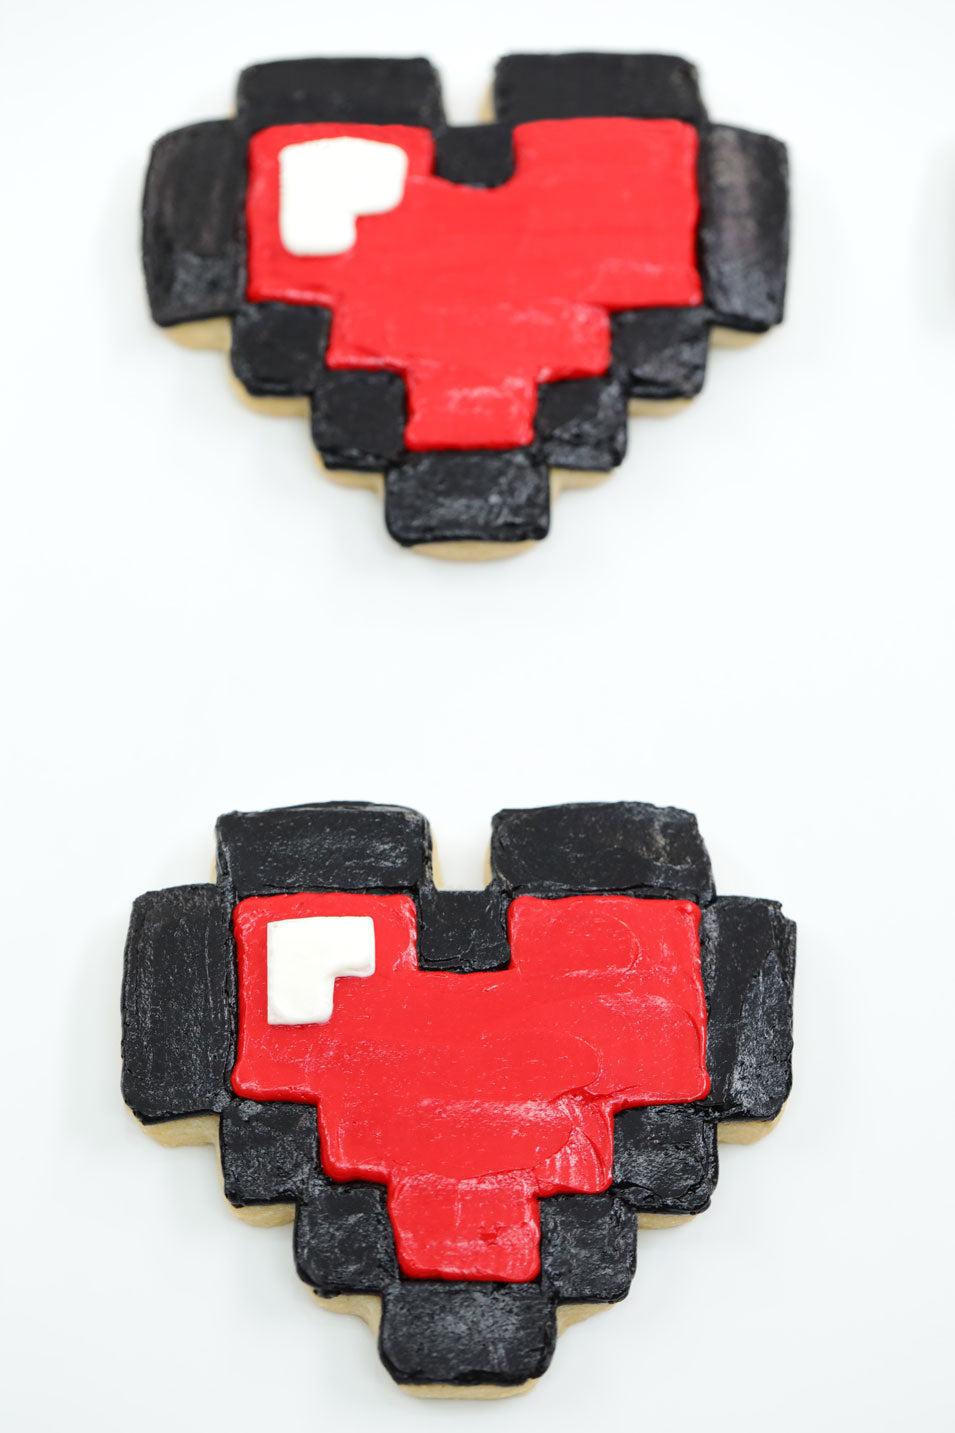 8-bit Heart Cookies